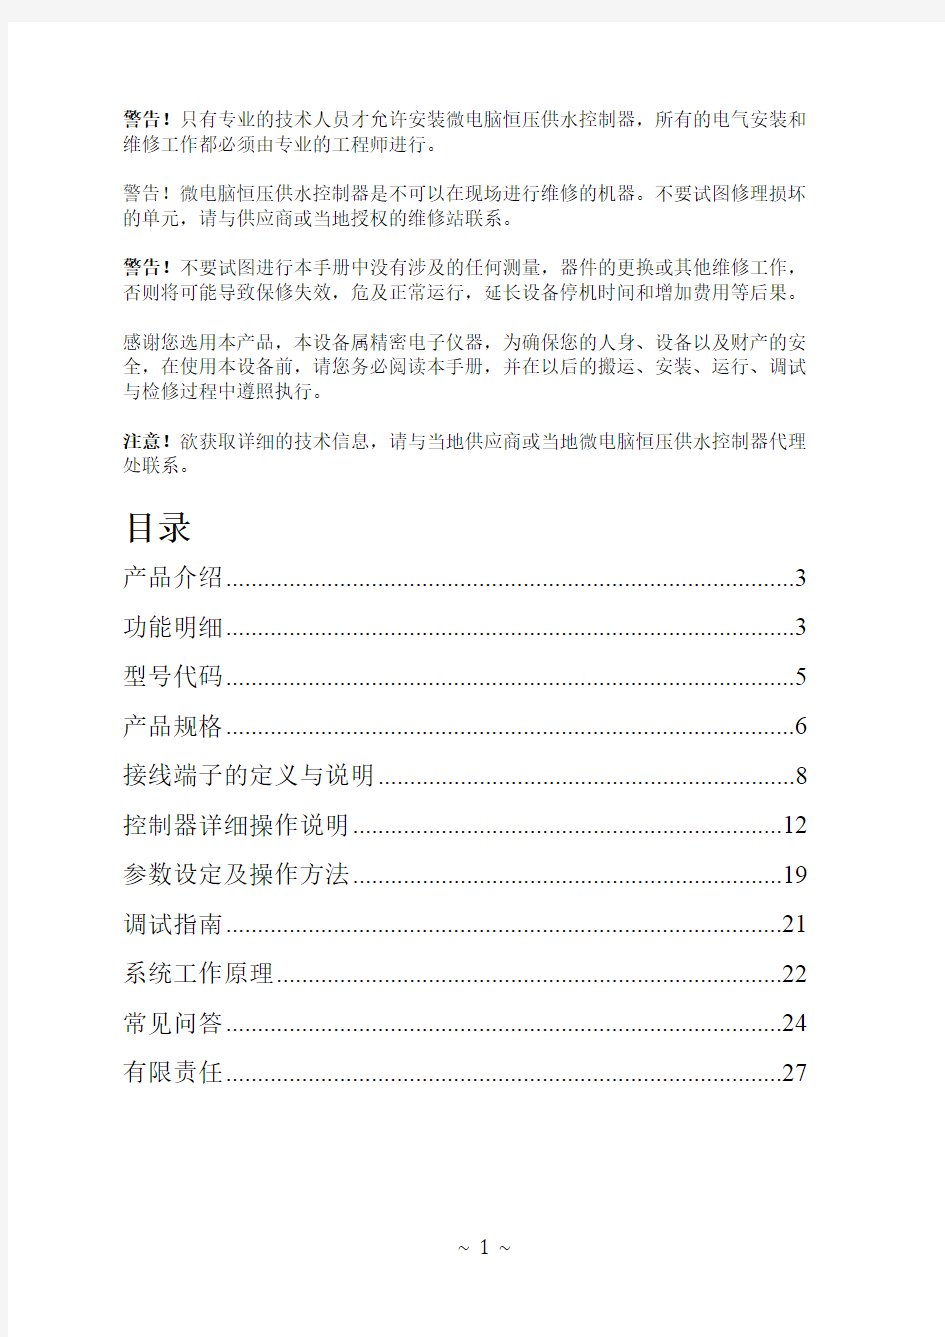 中文恒压供水控制器使用手册(V3.2版)